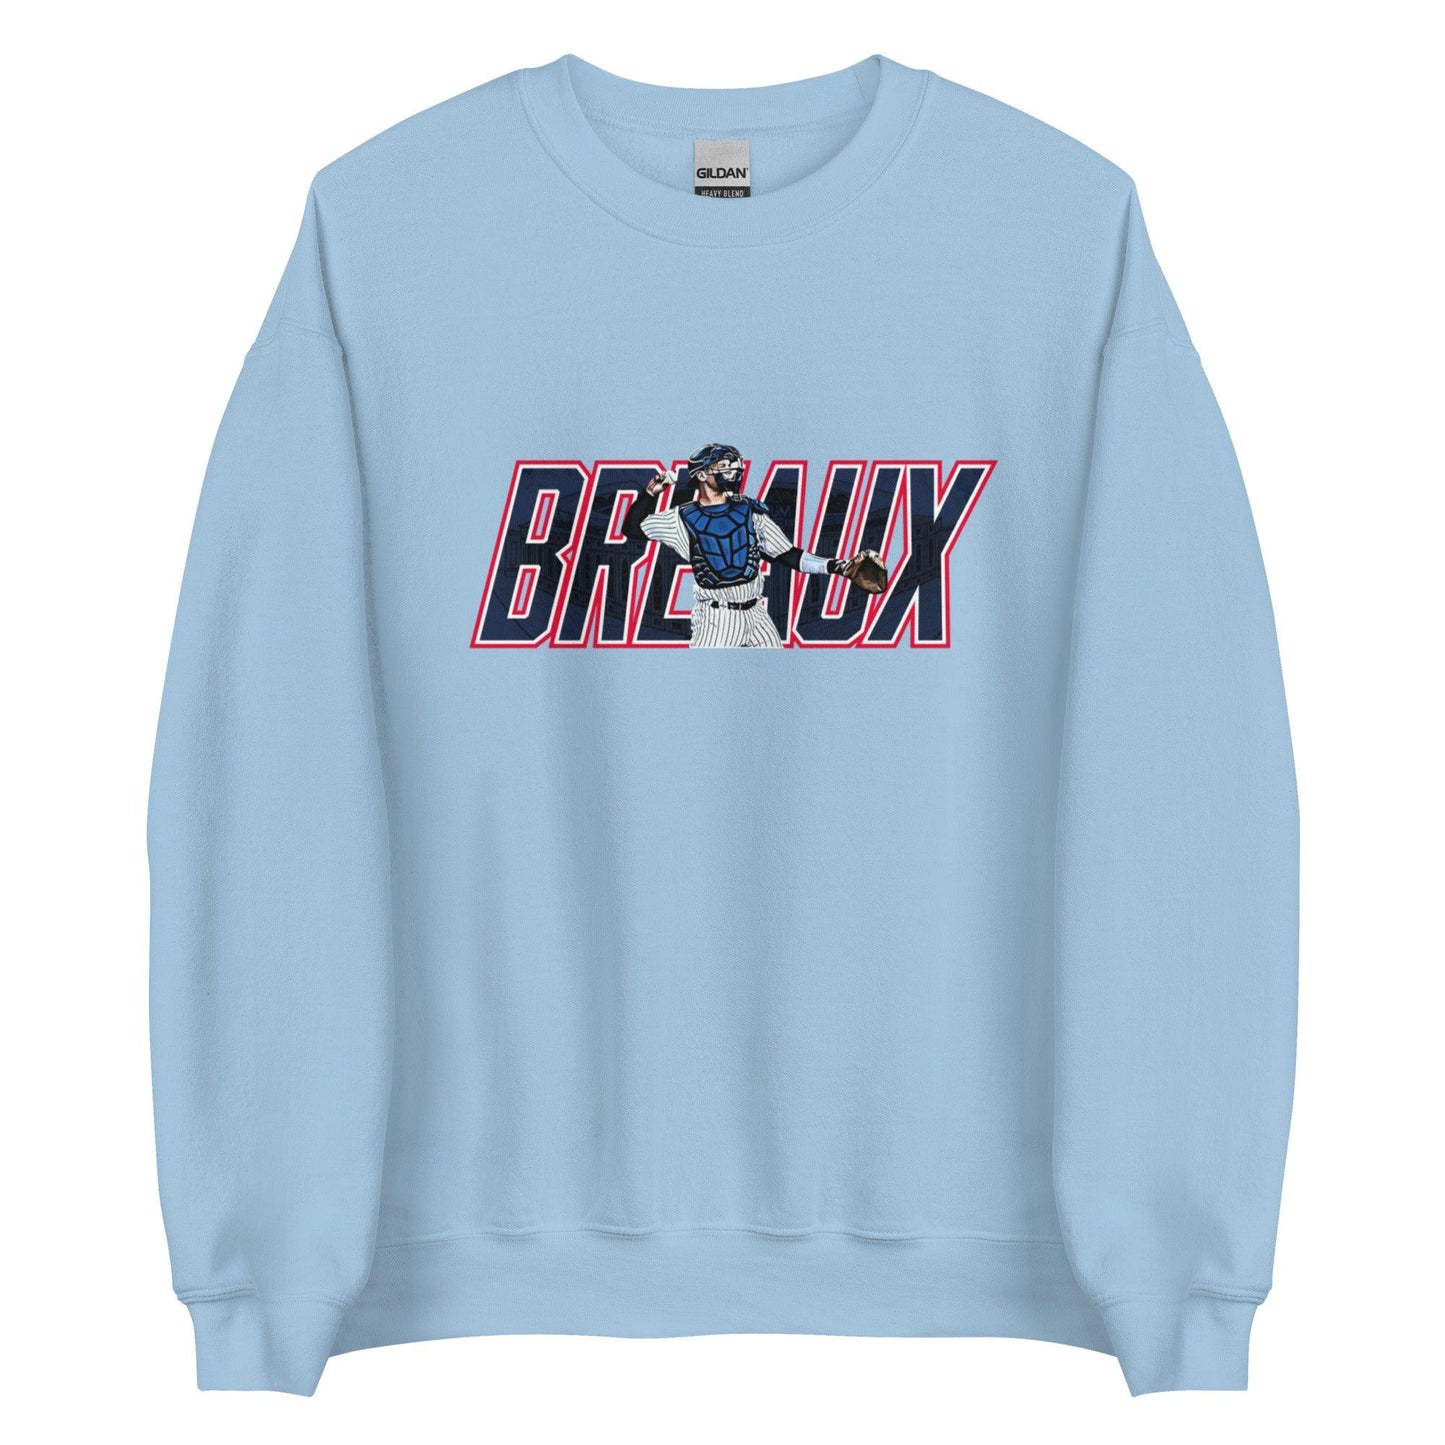 Josh Breaux "Throwback" Sweatshirt - Fan Arch